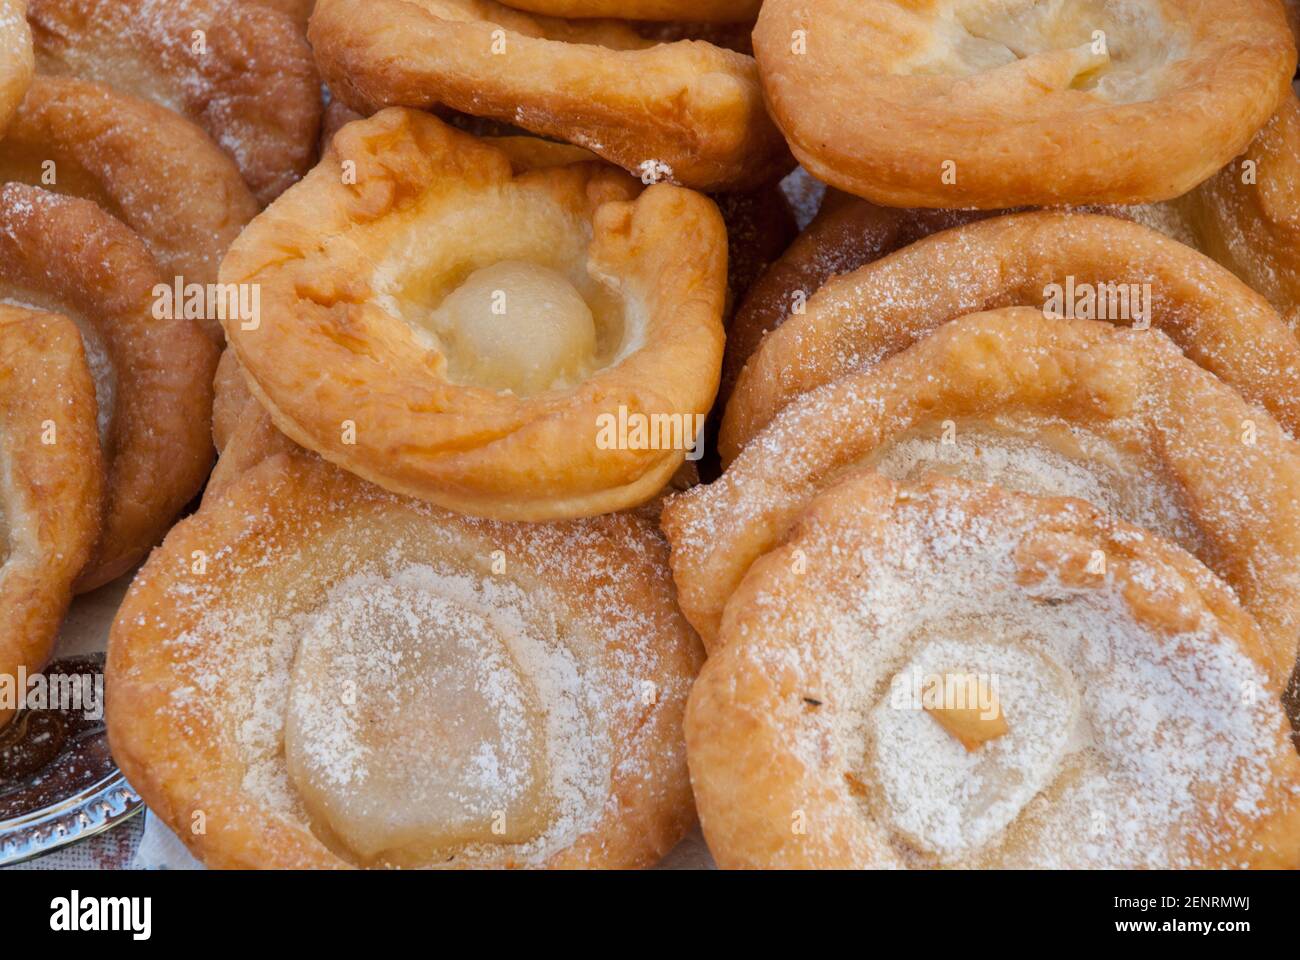 Austrian donuts, Bauernkrapfen, with powdered sugar, Bad Goisern, Austria Stock Photo